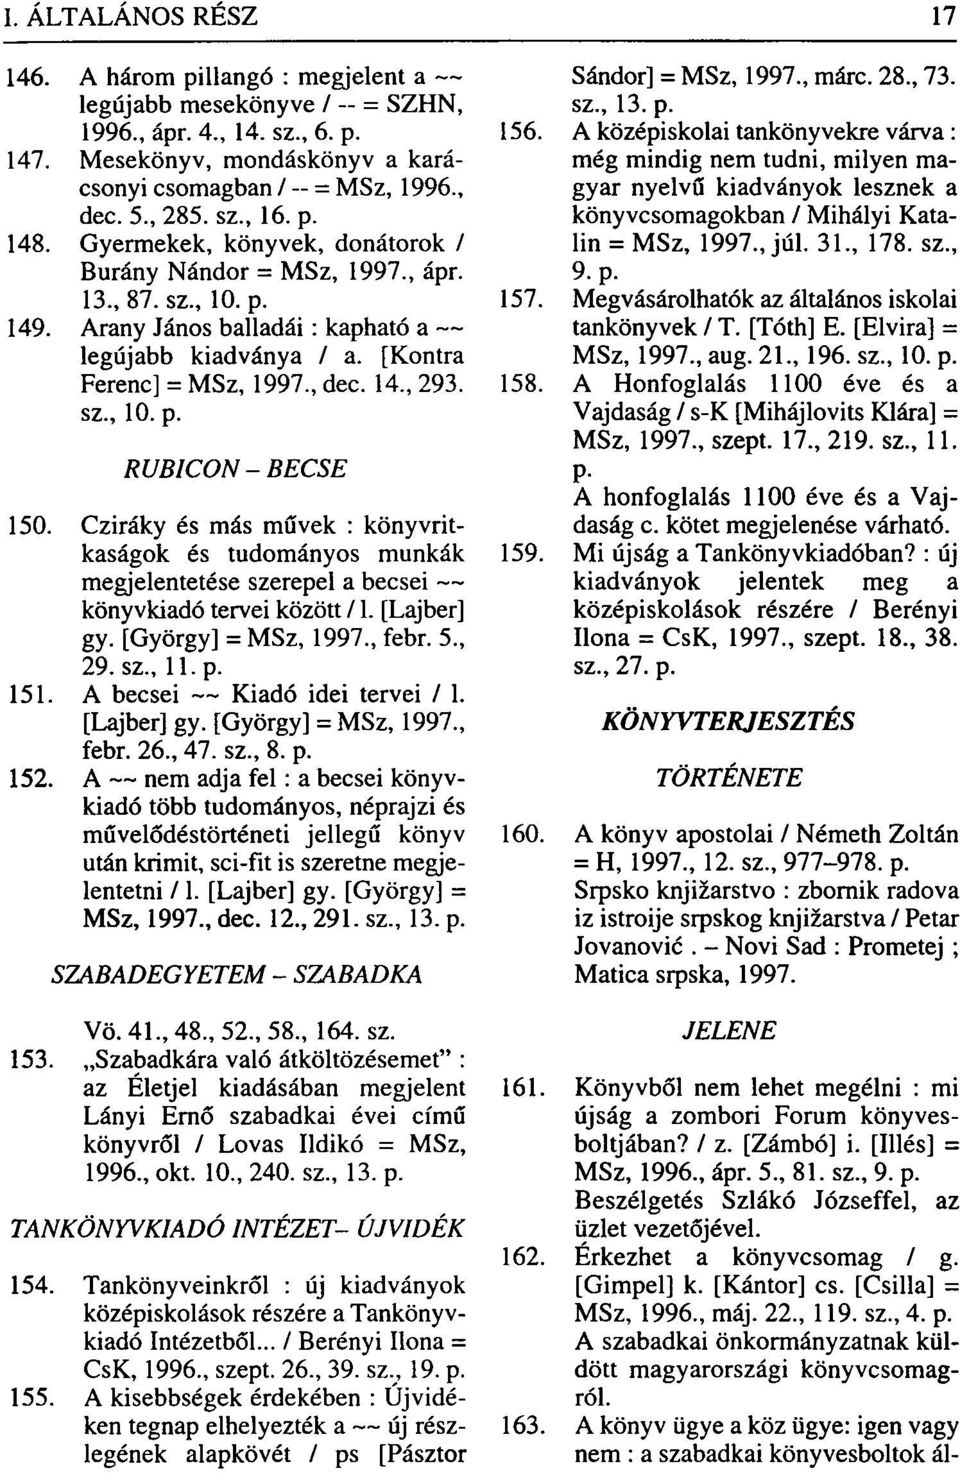 Cziráky és más művek : könyvritkaságok és tudományos munkák megjelentetése szerepel a becsei könyvkiadó tervei között /1. [Lajber] gy. [György] = MSz, 1997., febr. 5., 29. sz., 11. p. 151.